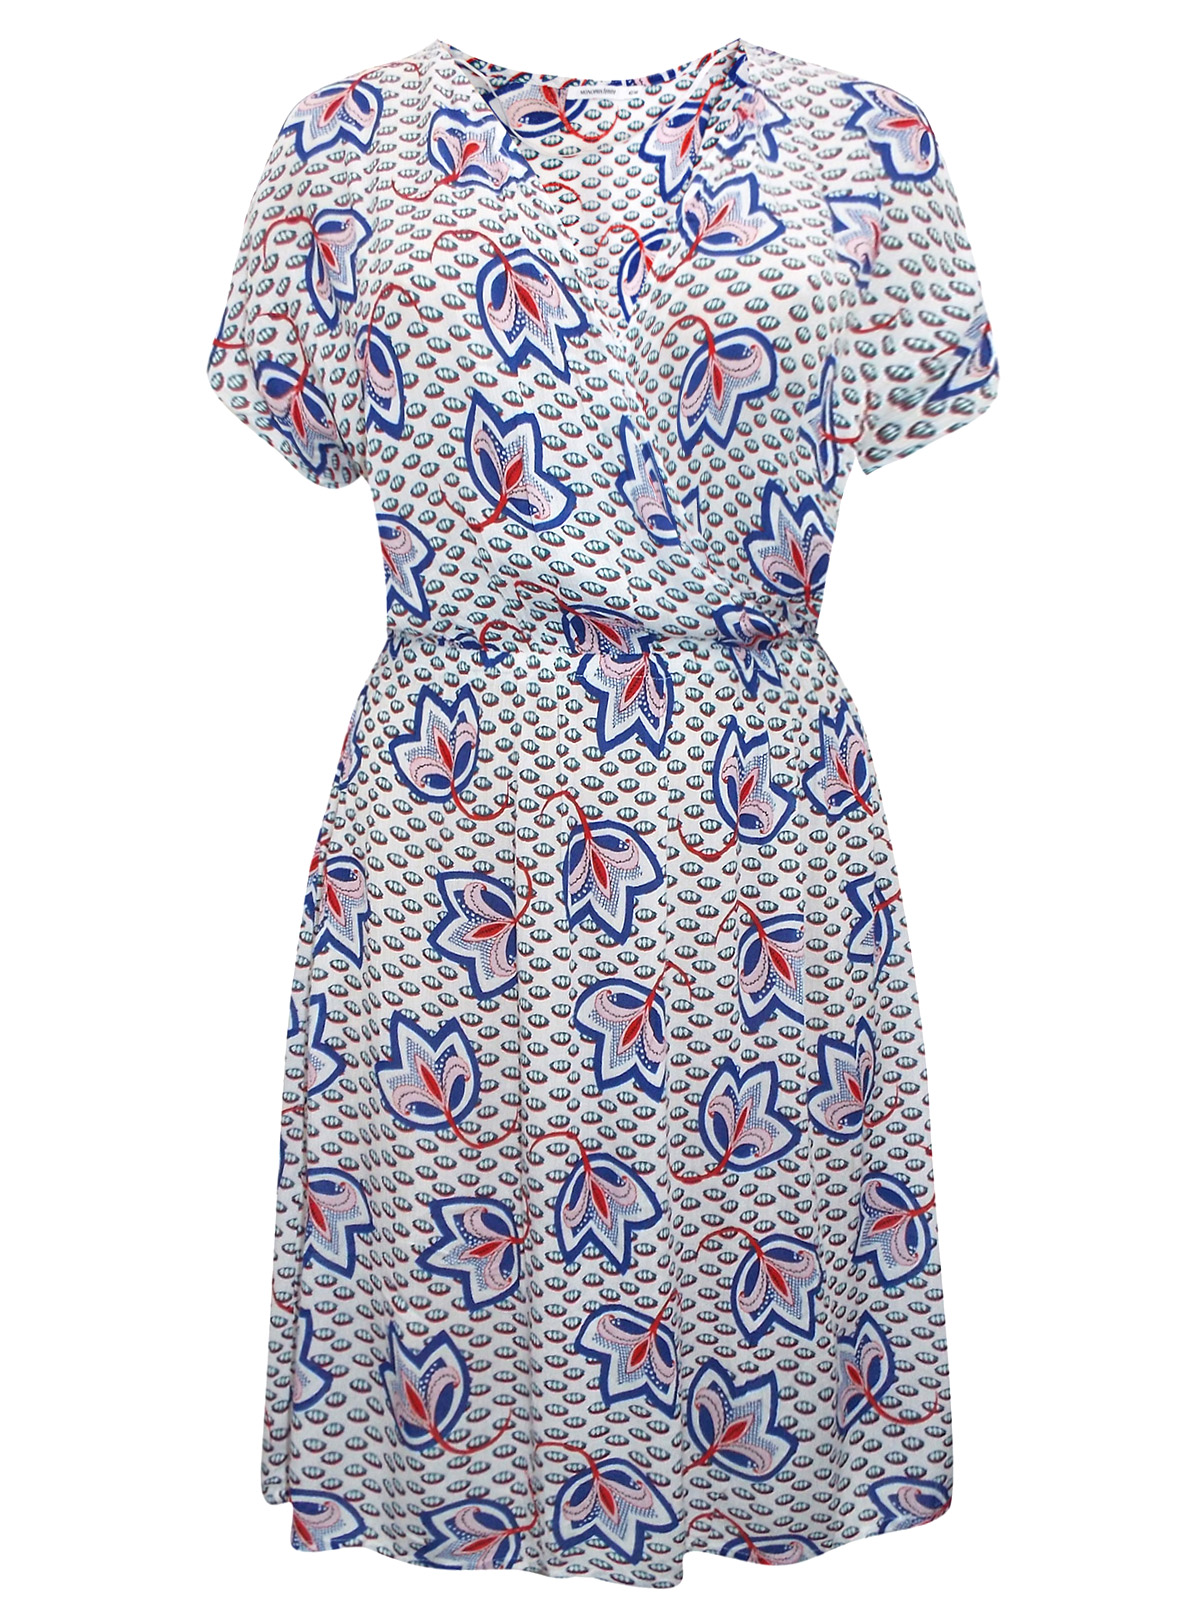 Monoprix Femme - - Monoprix WHITE Floral Print Mock Wrap Dress - Size 8 ...